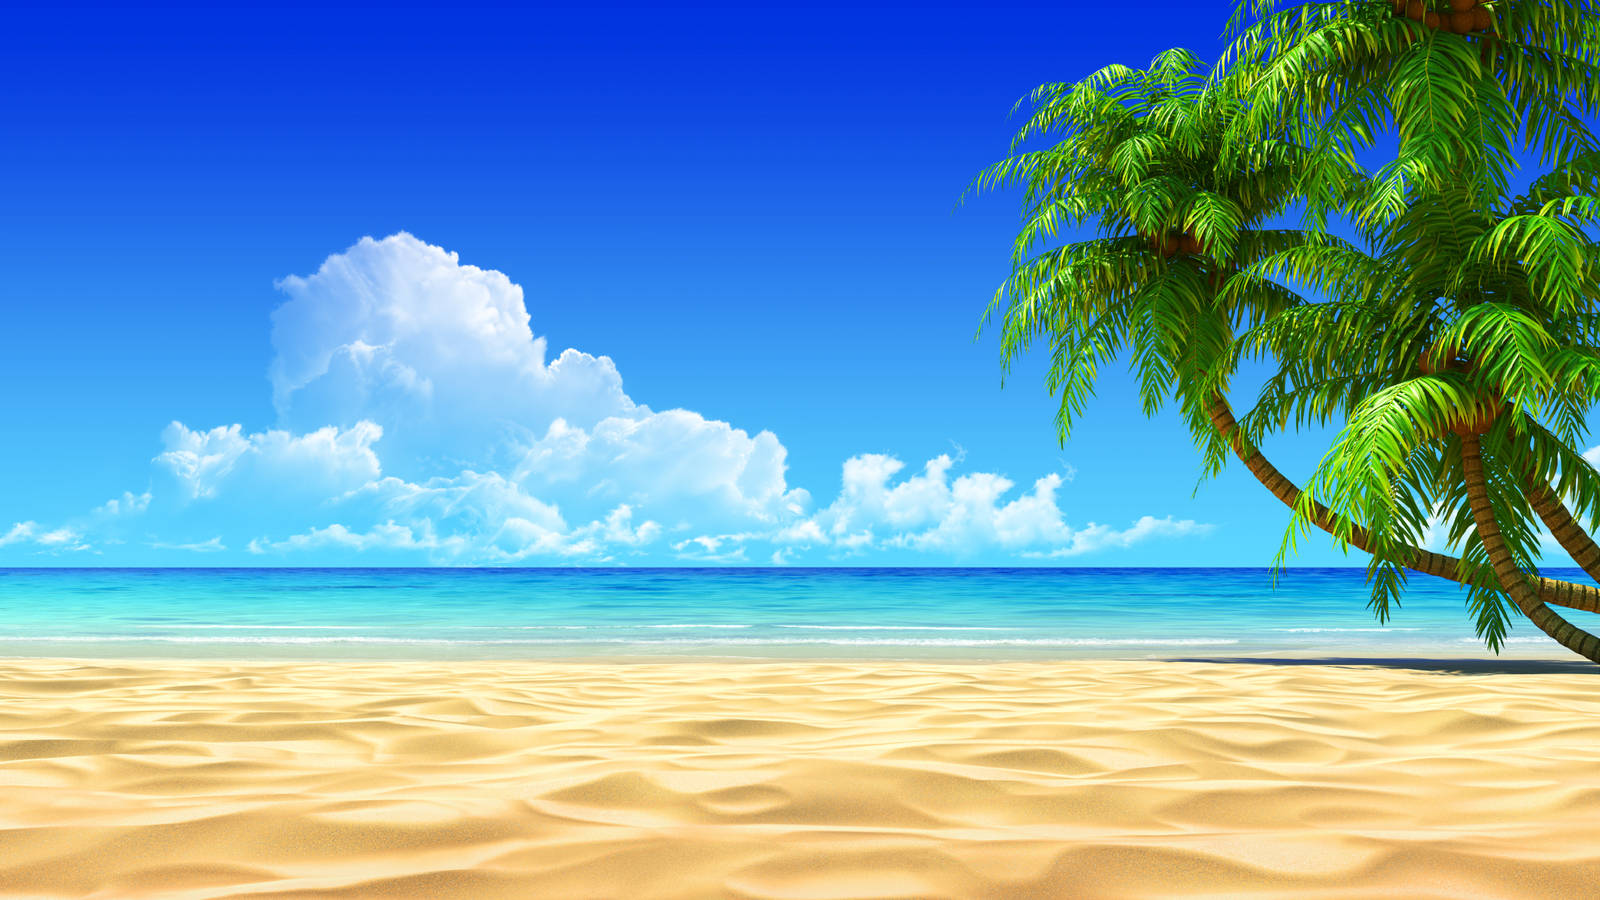 Digital Art Beach Desktop Background